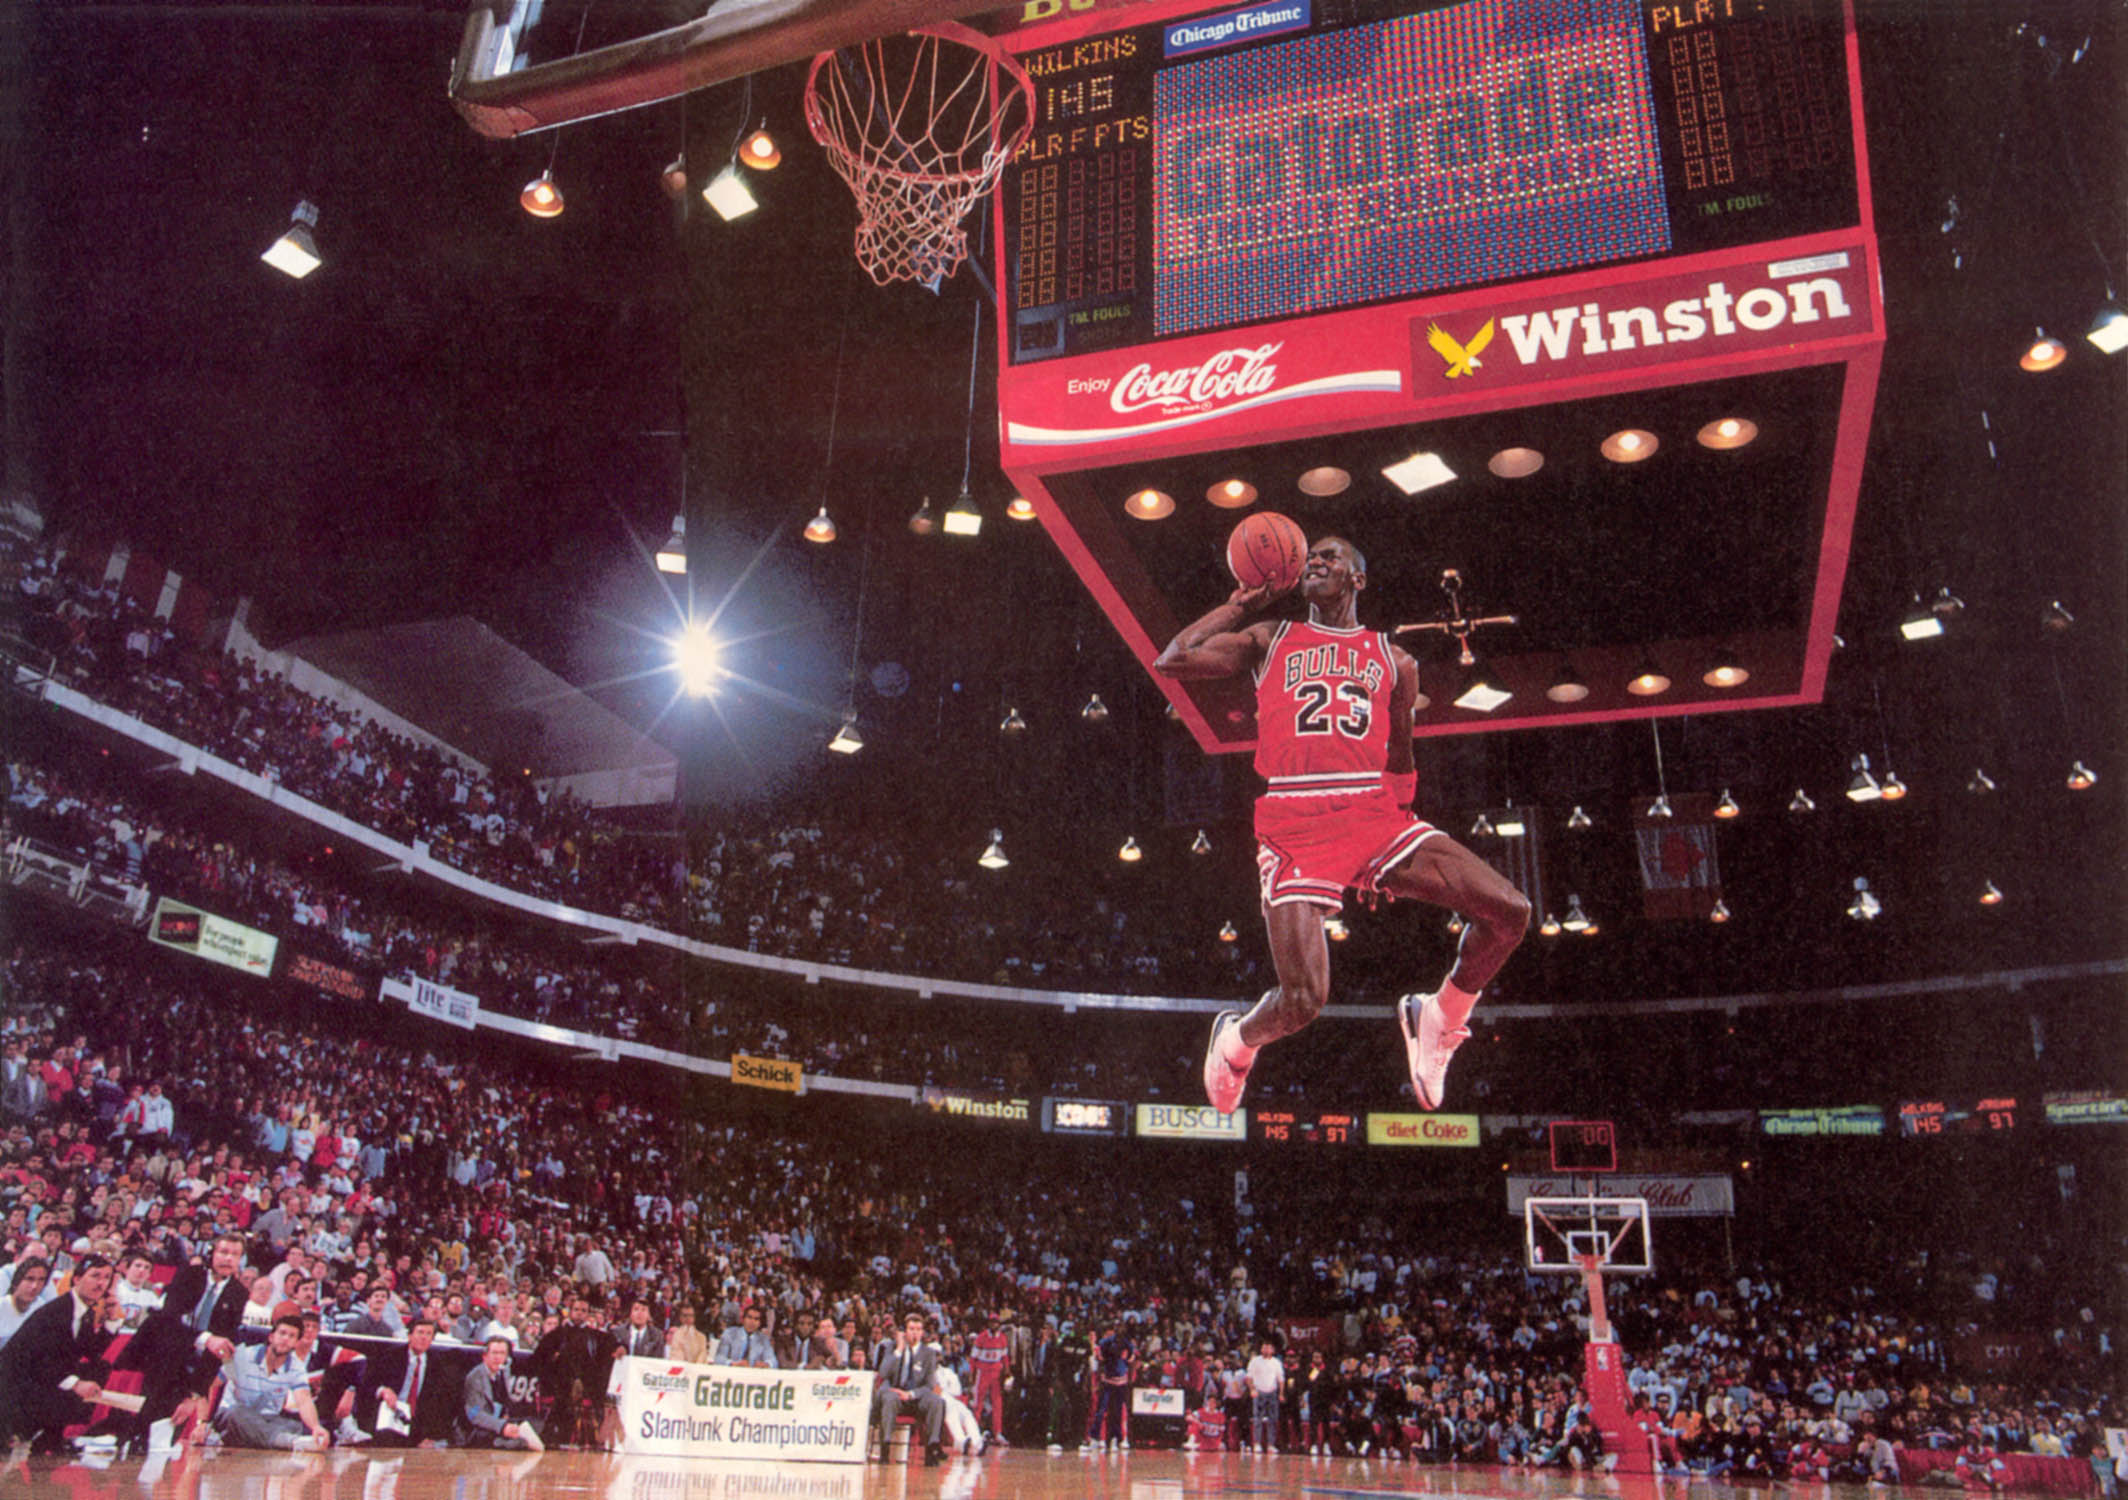 Free download Michael Jordan UNC [576x800] for your Desktop, Mobile &  Tablet, Explore 50+ Michael Jordan North Carolina Wallpaper